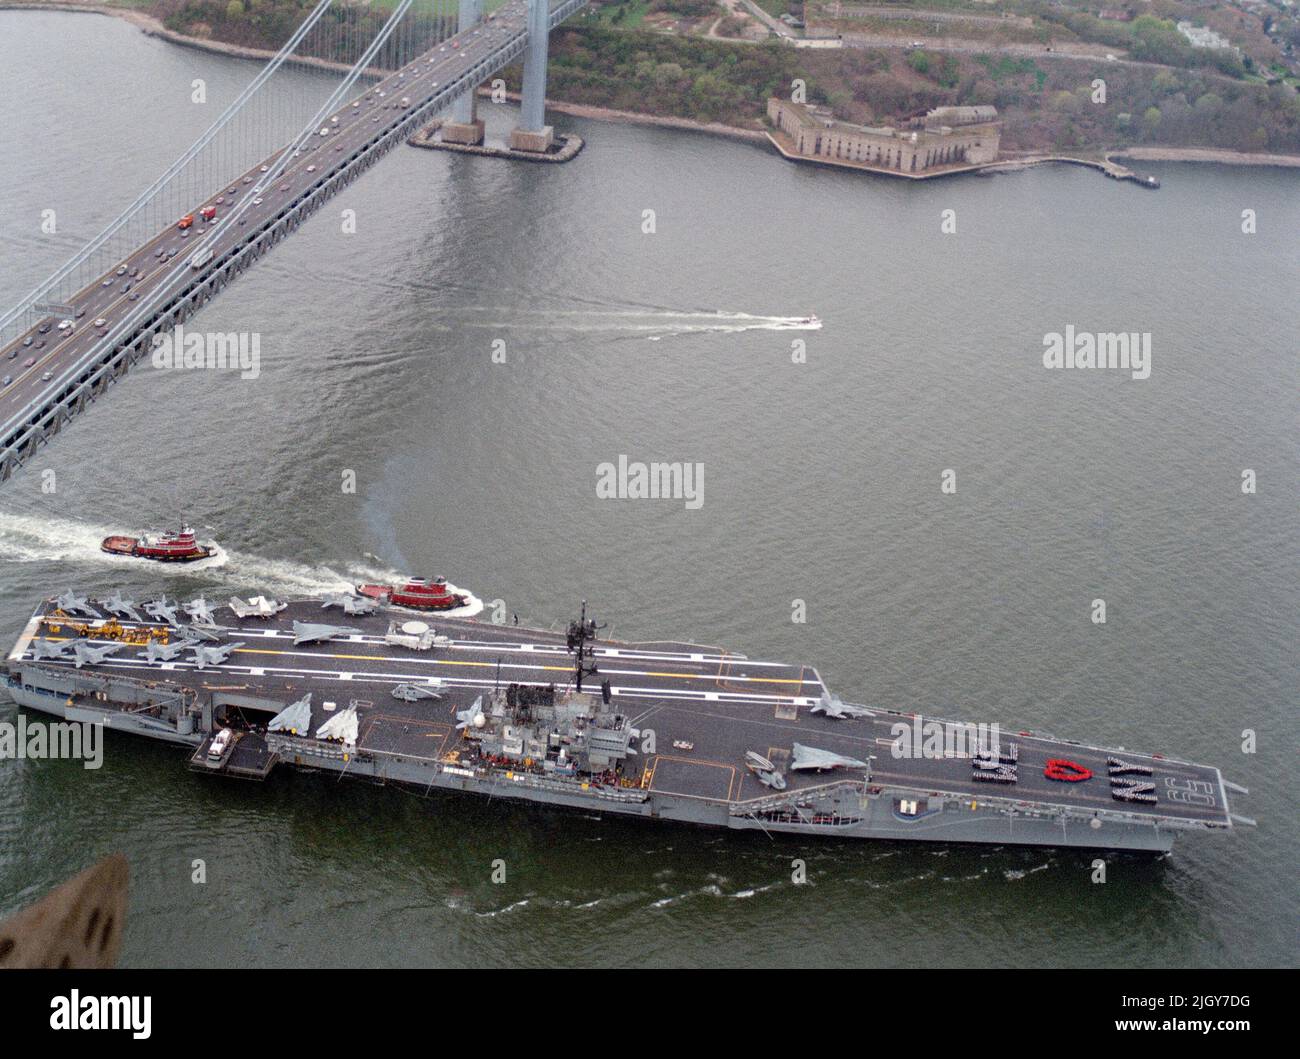 El portaaviones USS CORRESTAL (CV 59), acompañado por un par de remolcadores, pasa por debajo del puente Verrazano Narrows cuando se aproxima a la ciudad de Nueva York. EL CORRESTAL y su grupo de batalla como visitar la ciudad para Fleet Week'89 Foto de stock